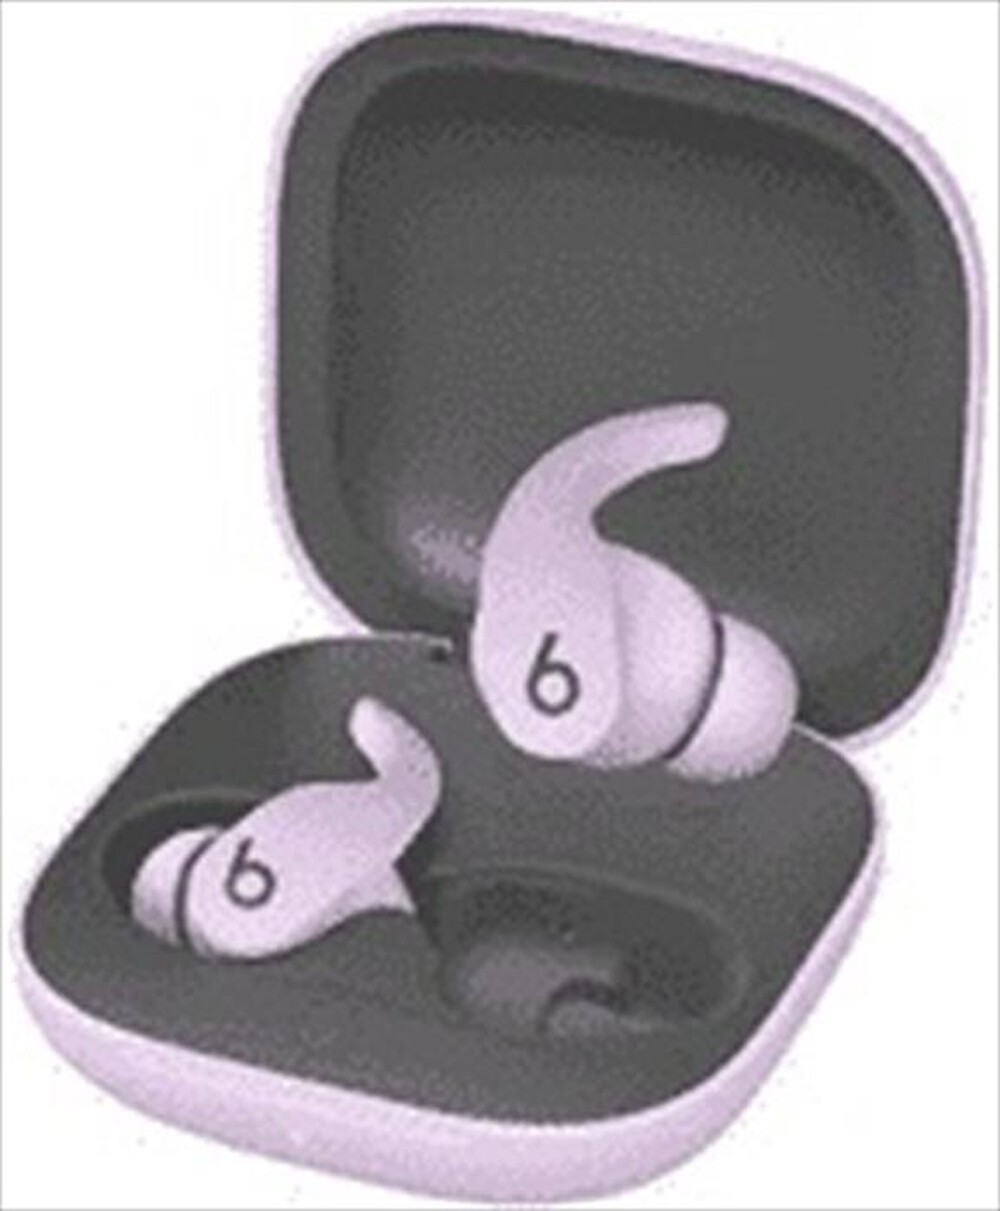 "BEATS BY DR.DRE - Fit Pro True Wireless Earbuds-Viola ametista"